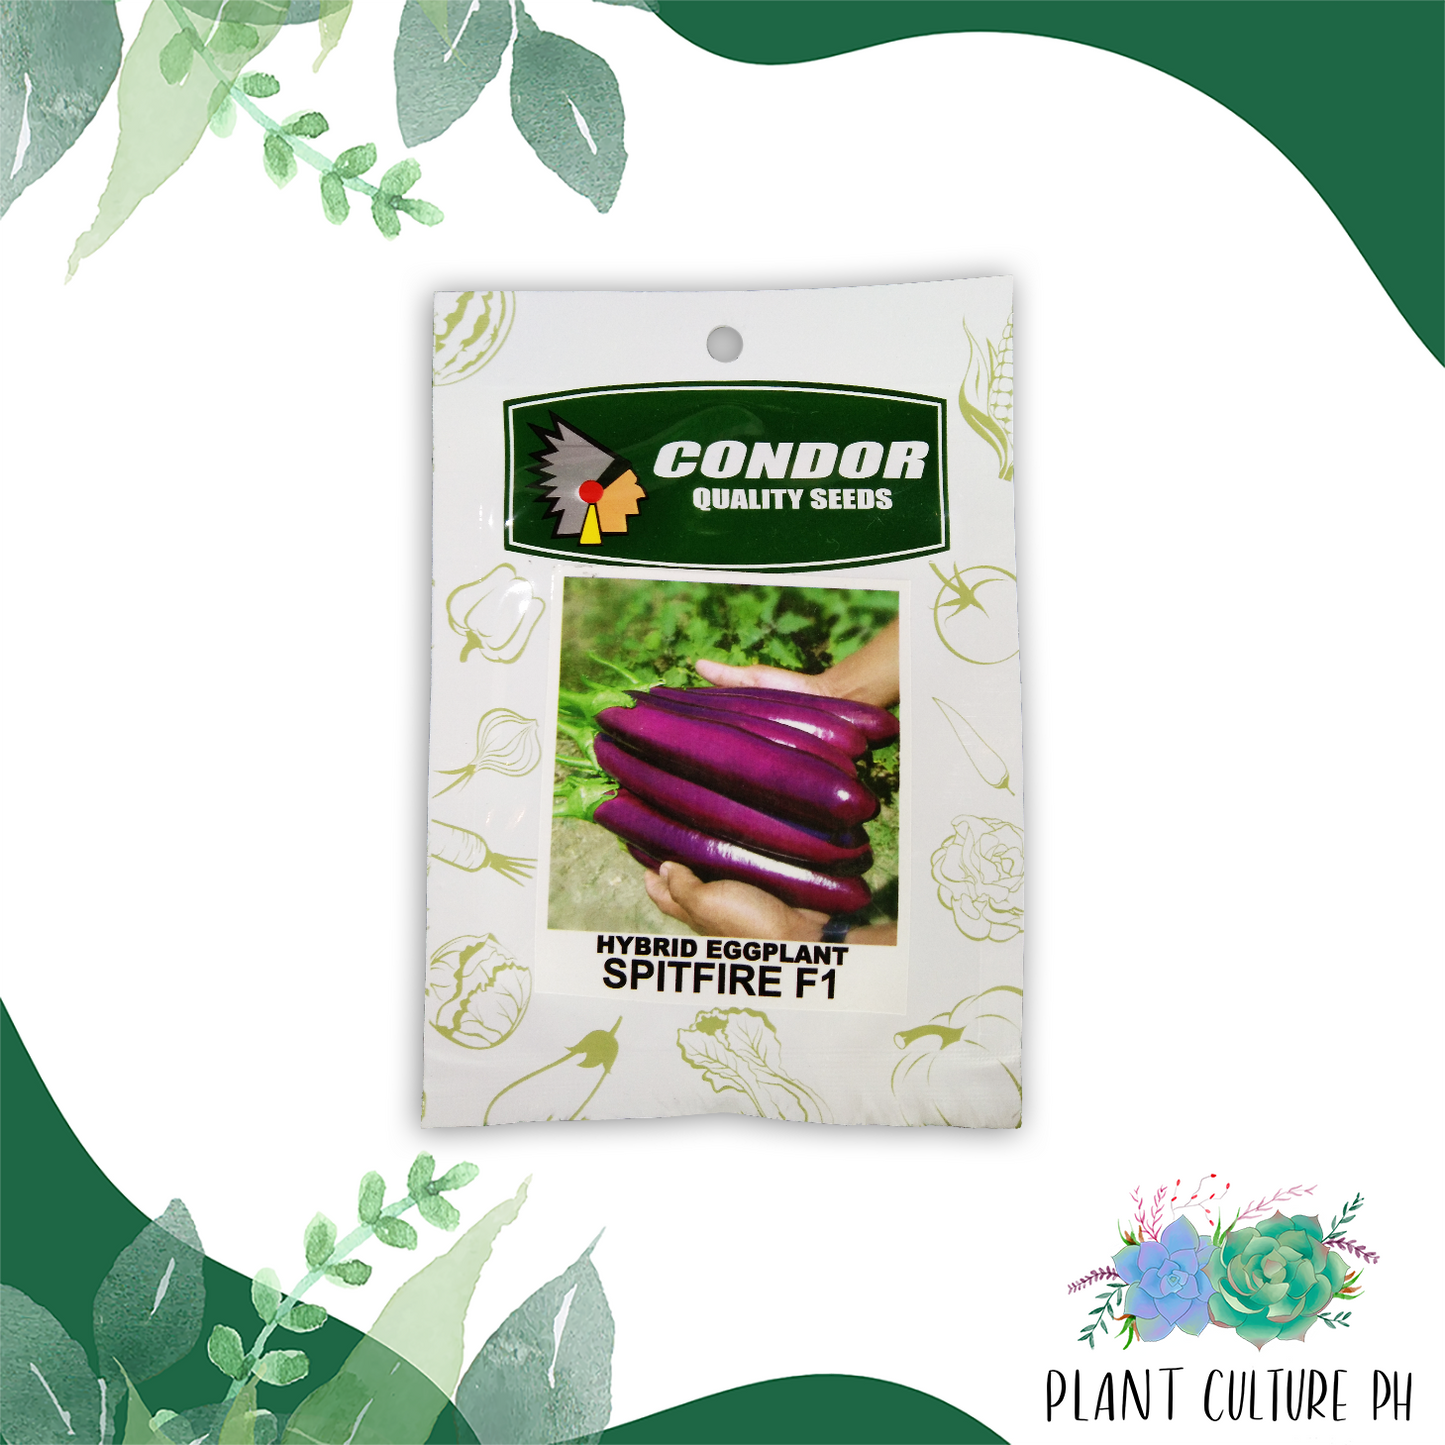 Condor Quality Seeds Hybrid Eggplant Spitfire F1 1.5 grams